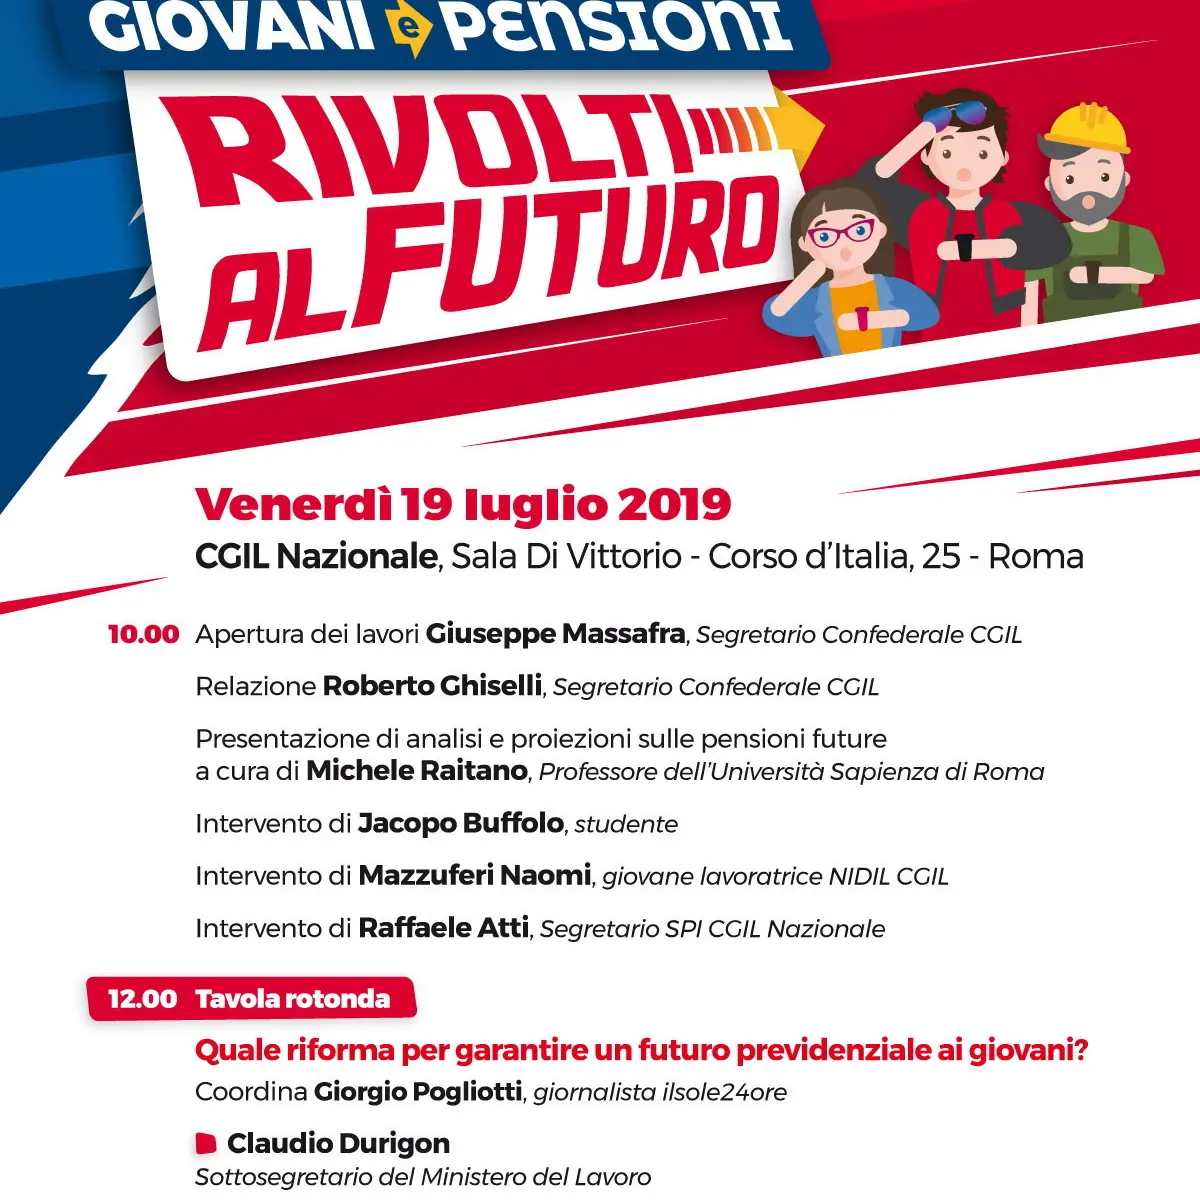 Pensioni: Cgil, il 19 luglio a Roma prima iniziativa ‘Rivolti al Futuro’ sui giovani